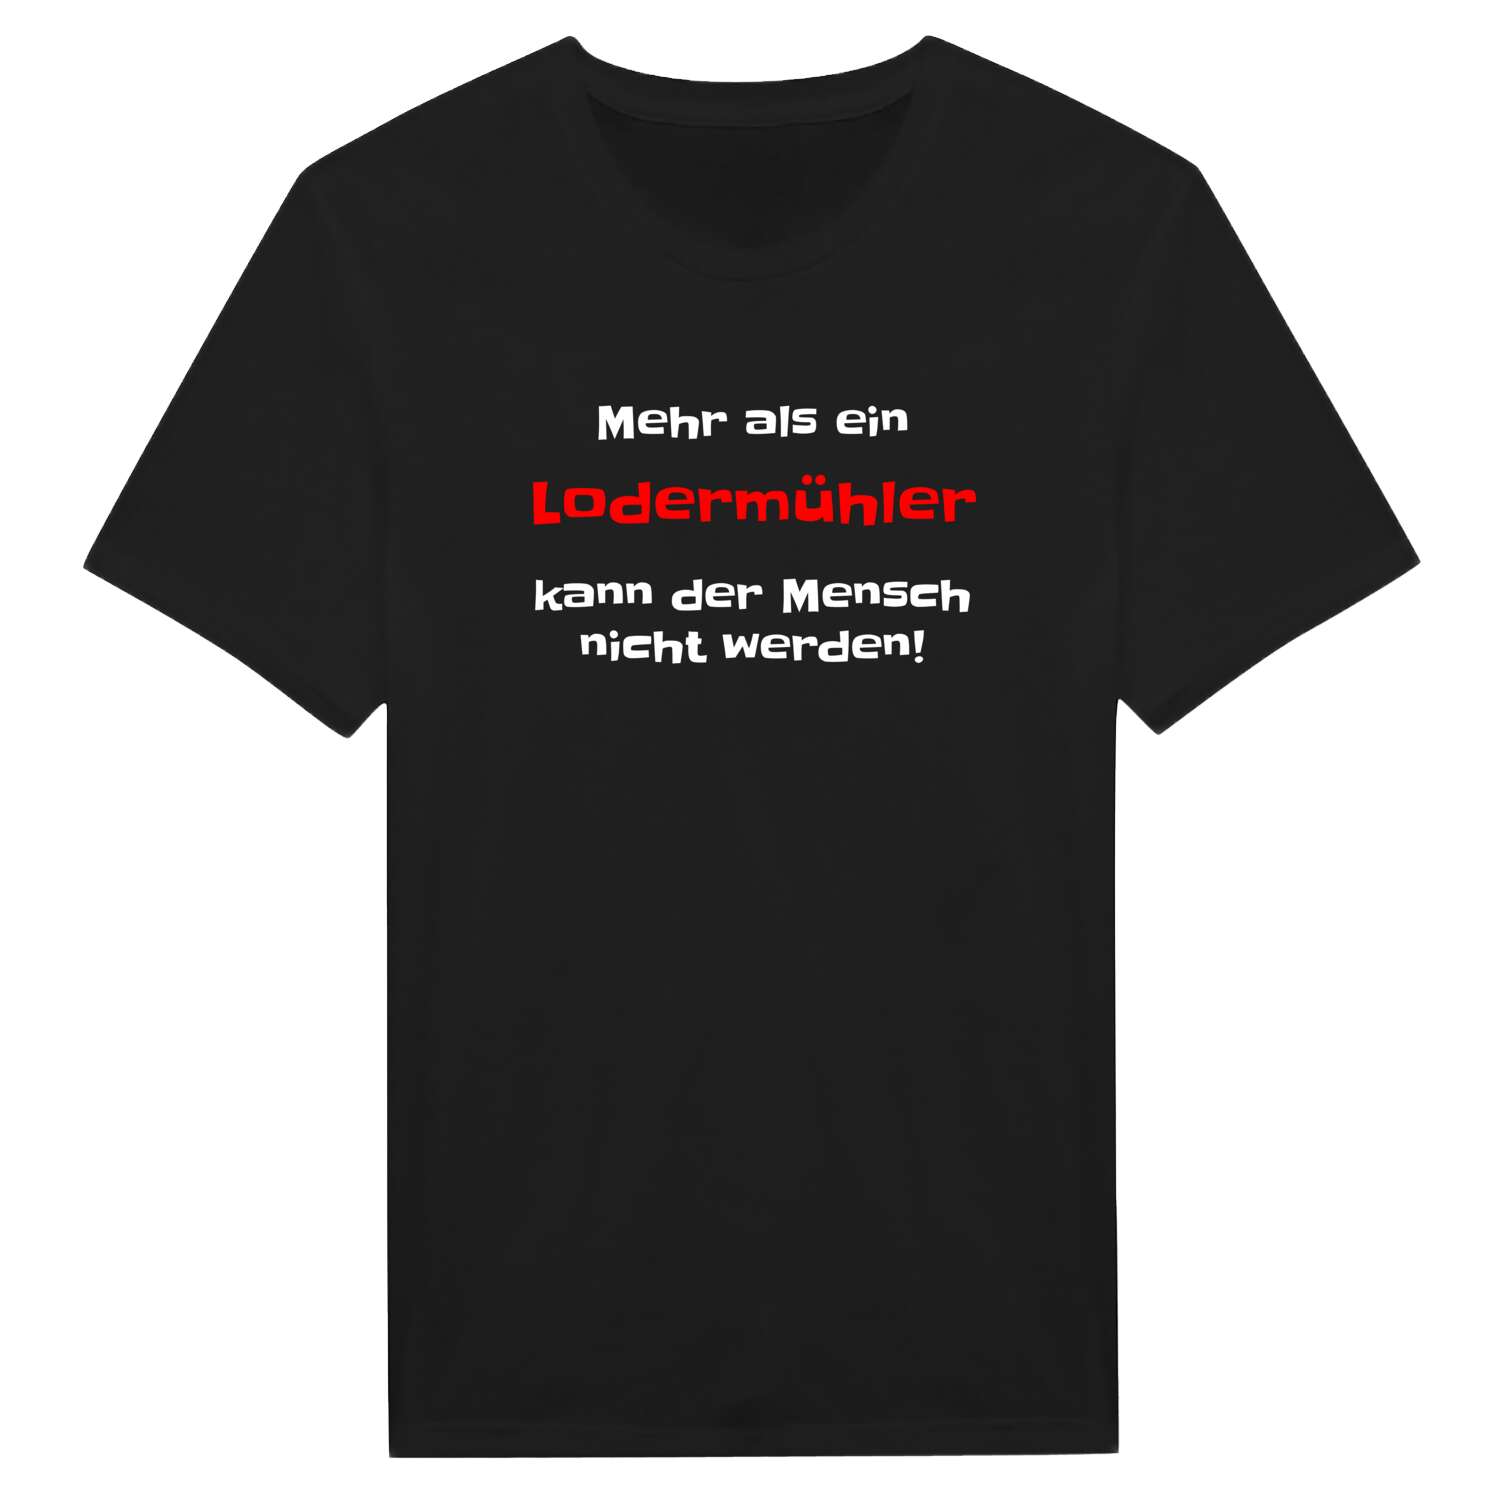 Lodermühl T-Shirt »Mehr als ein«